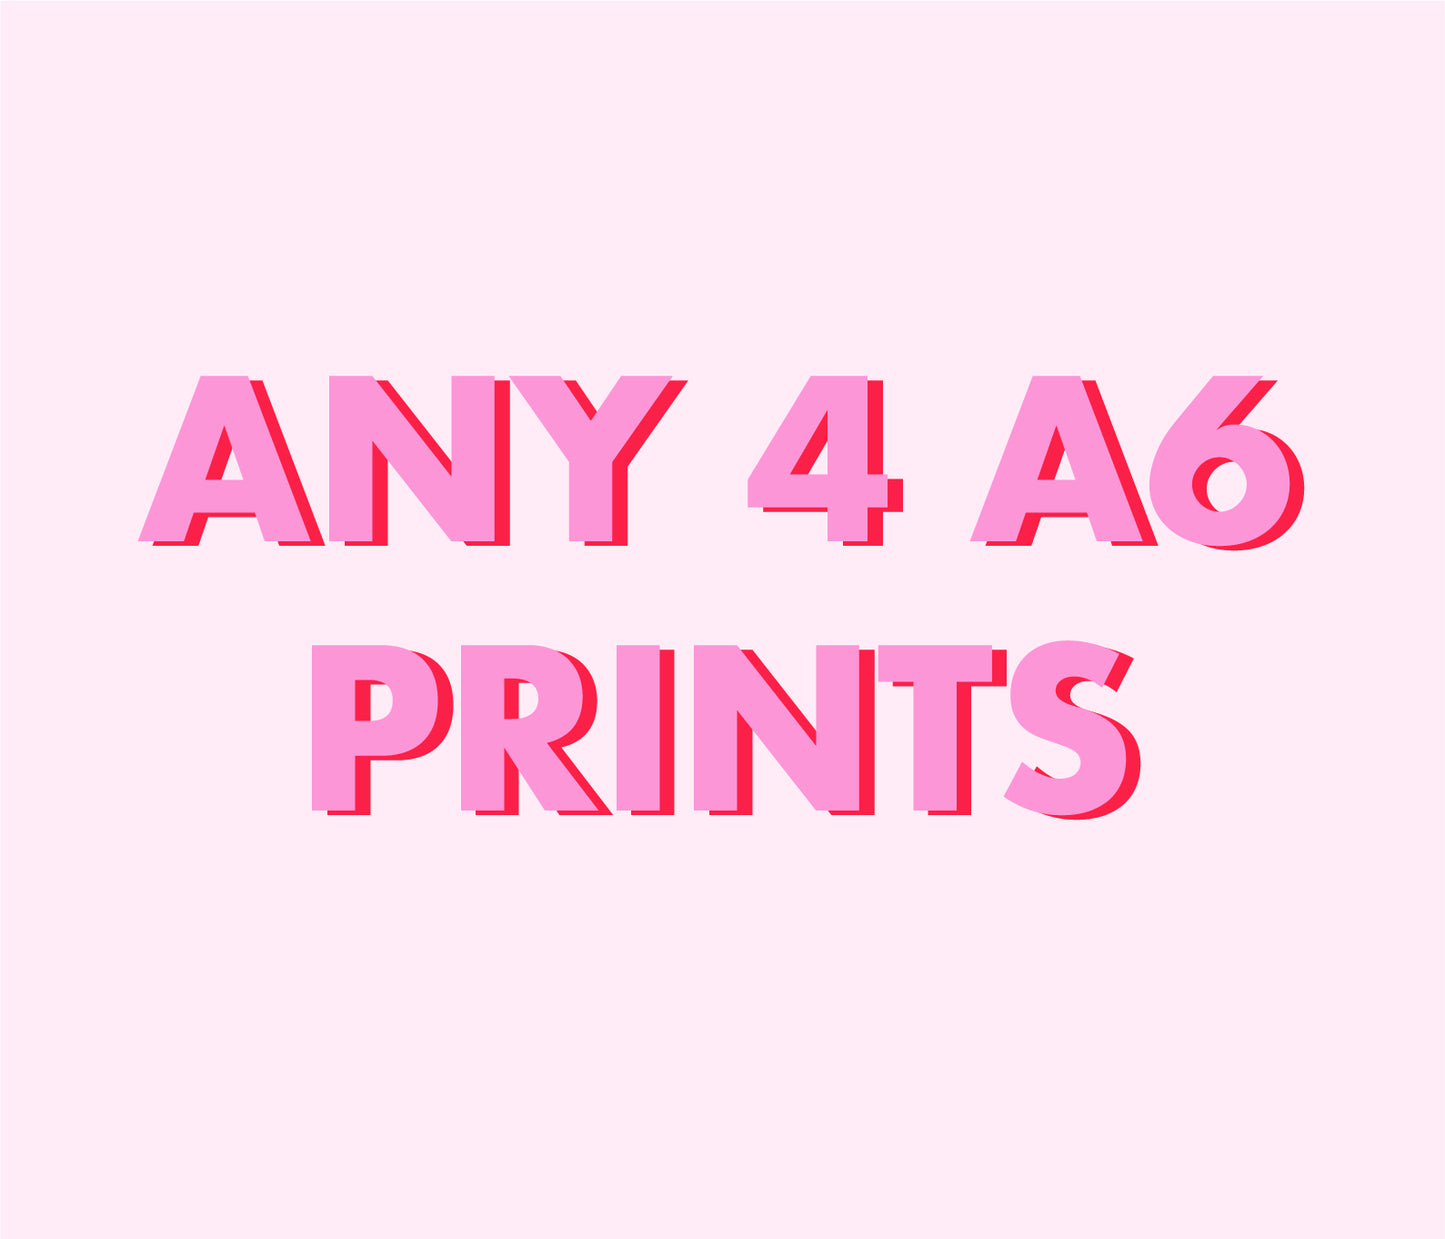 Any 4 A6 Prints Bundle